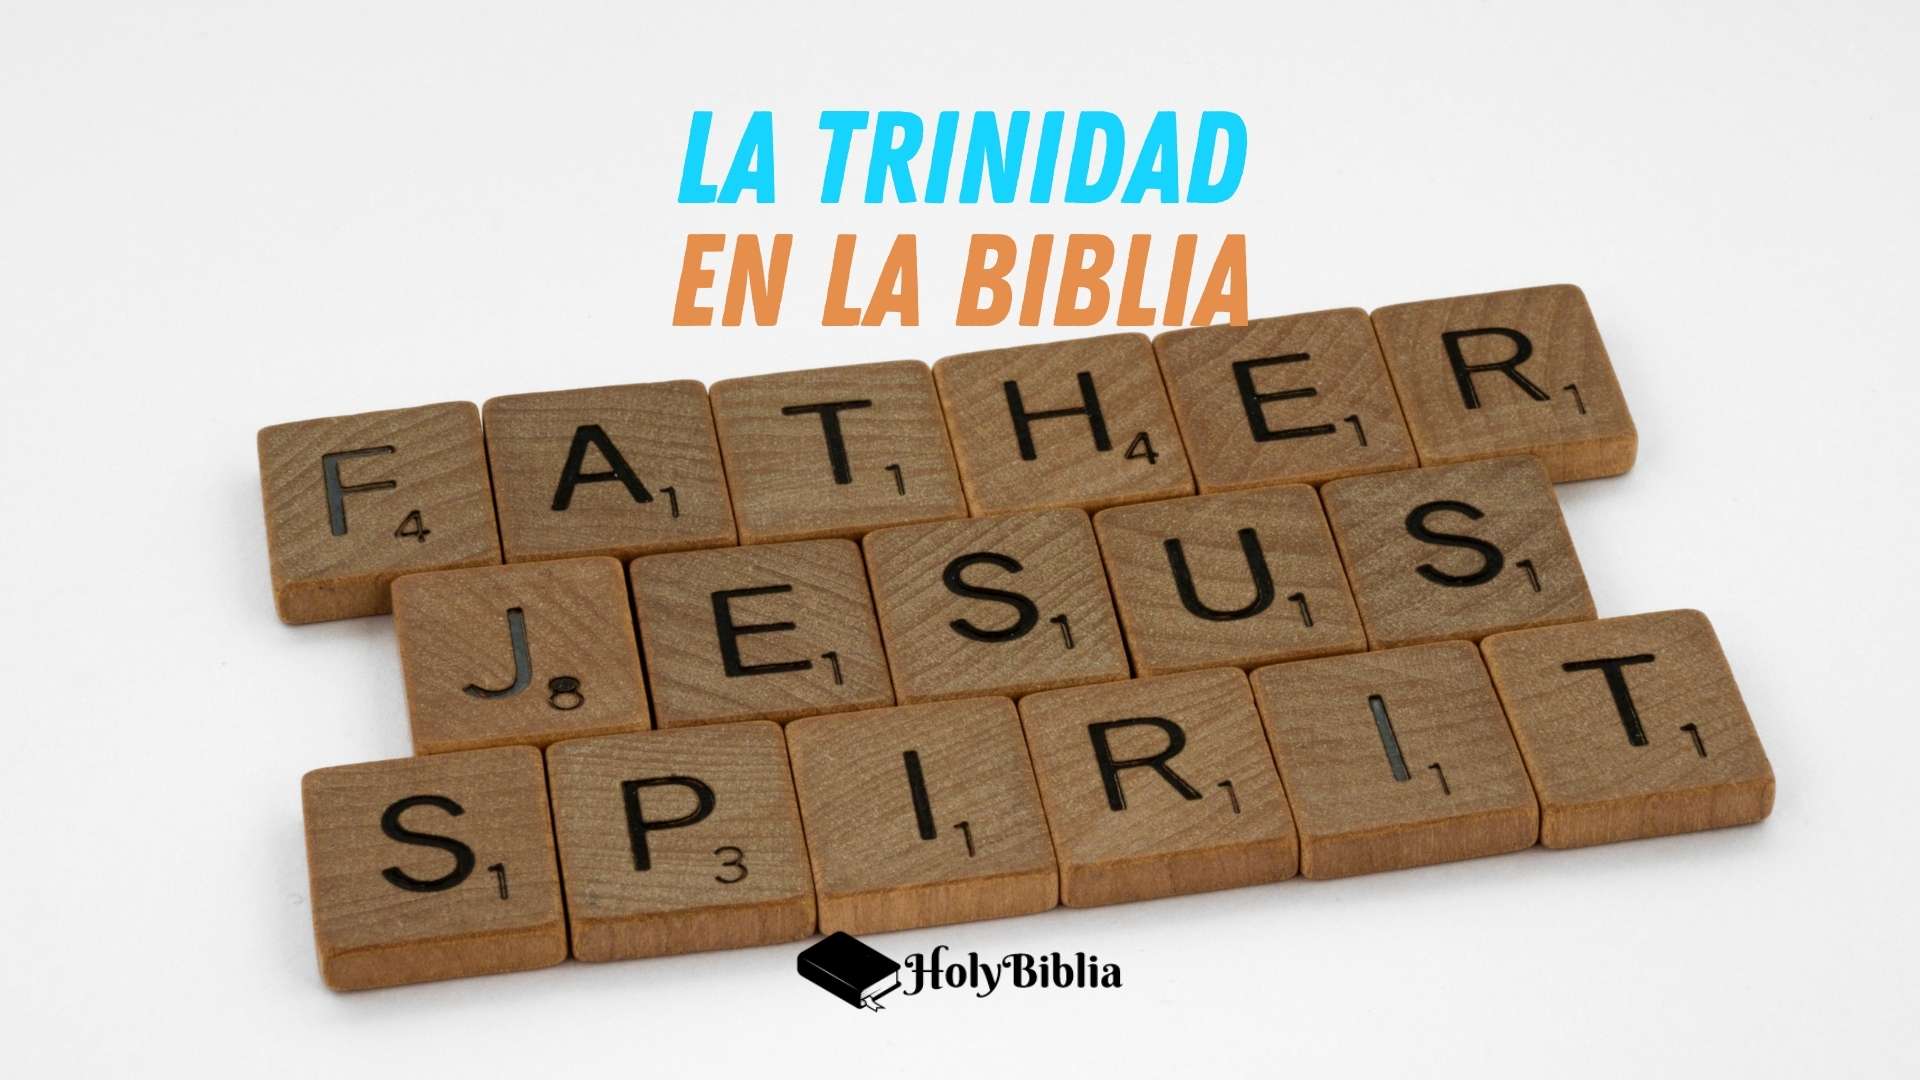 La Trinidad en la Biblia